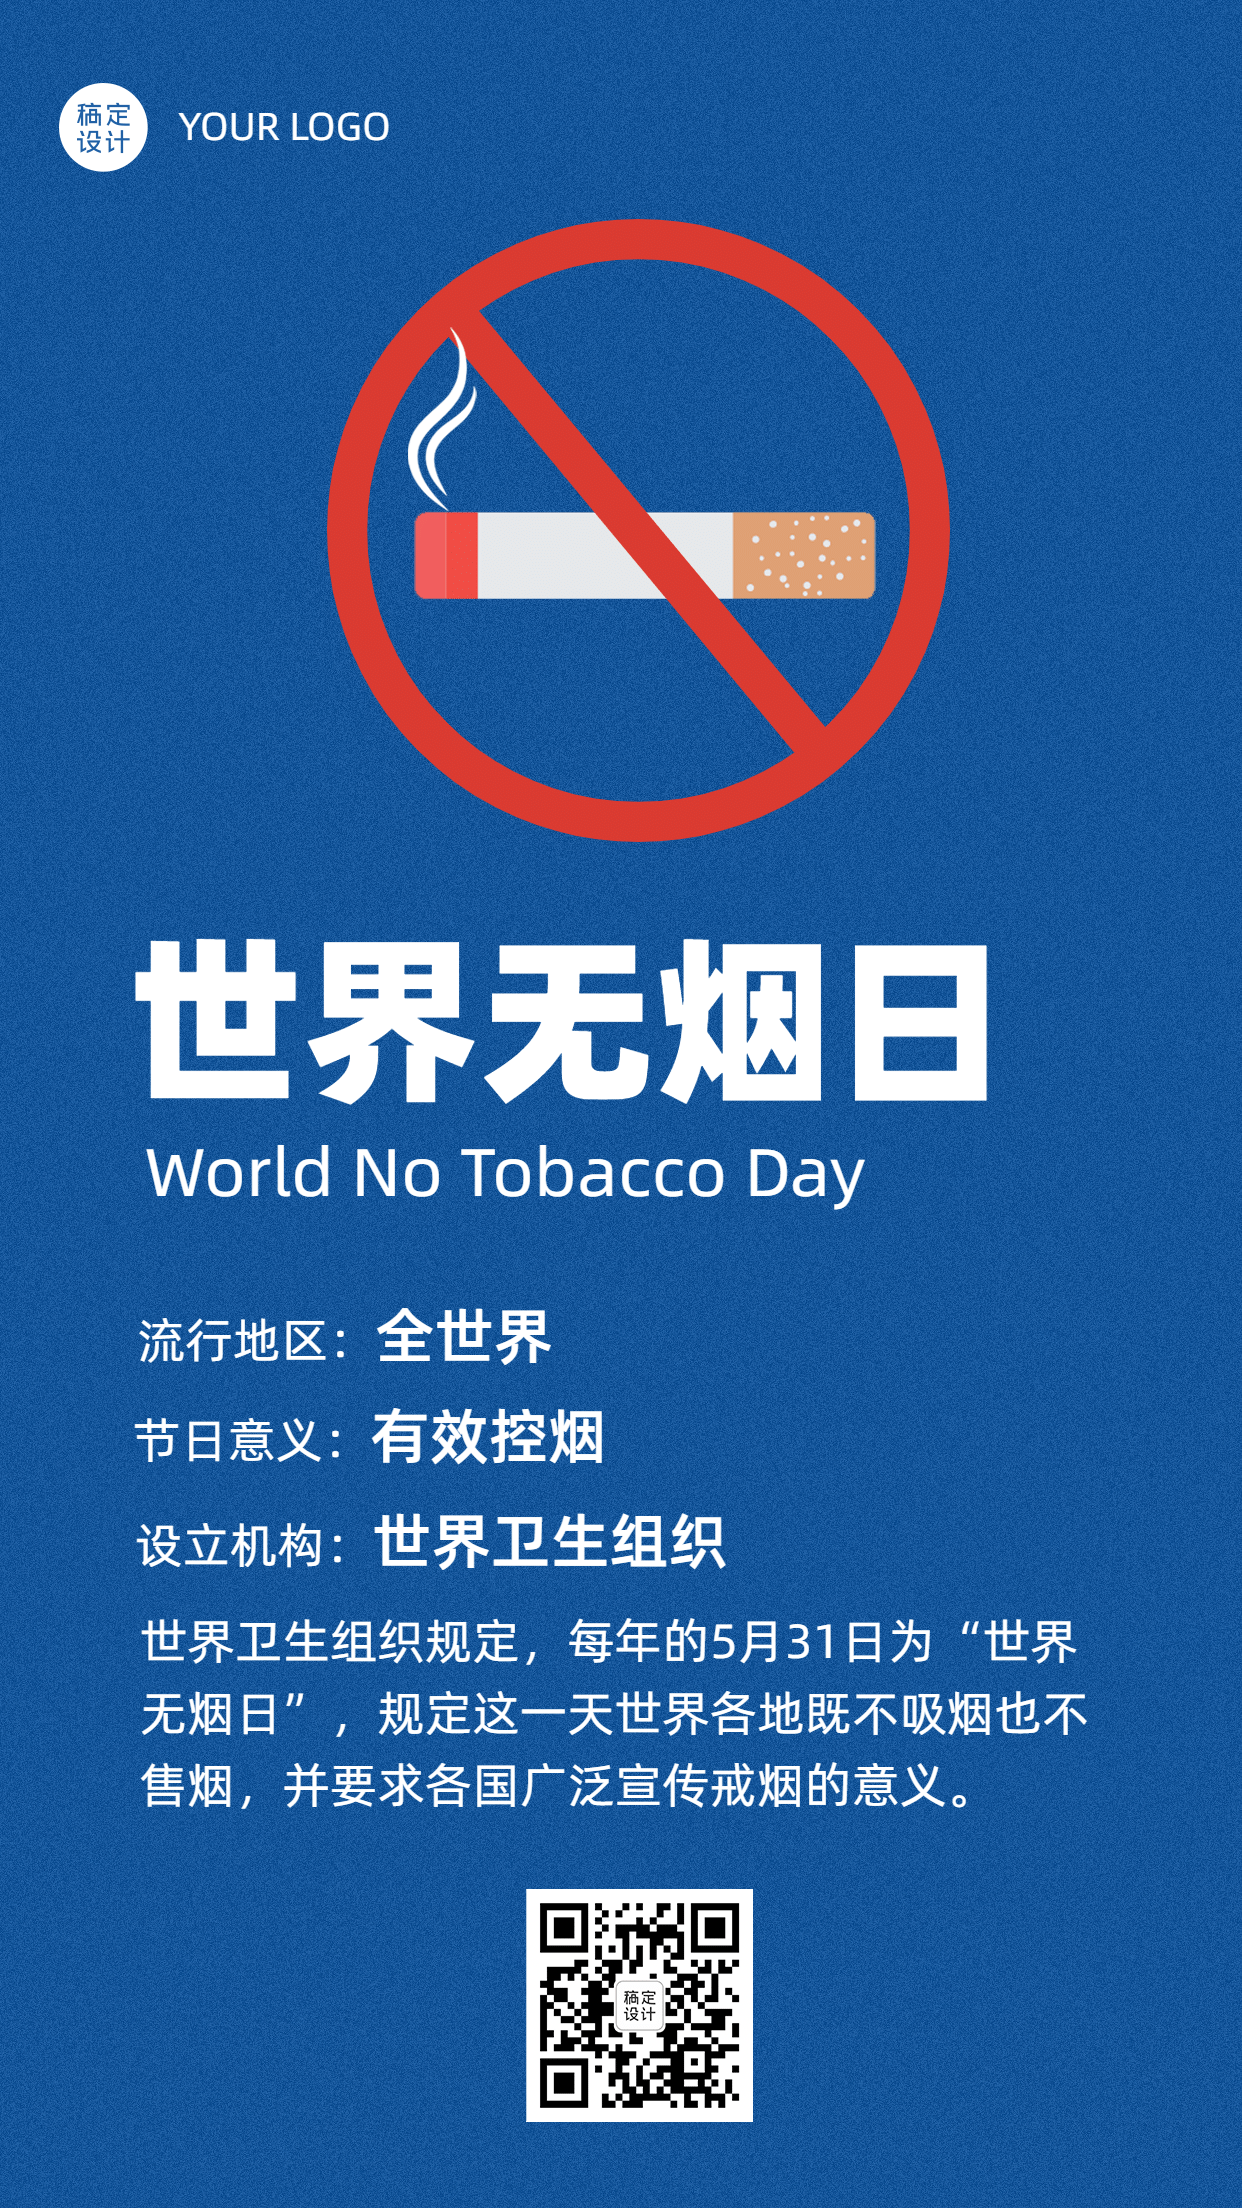 世界无烟日公益宣传科普手机海报预览效果